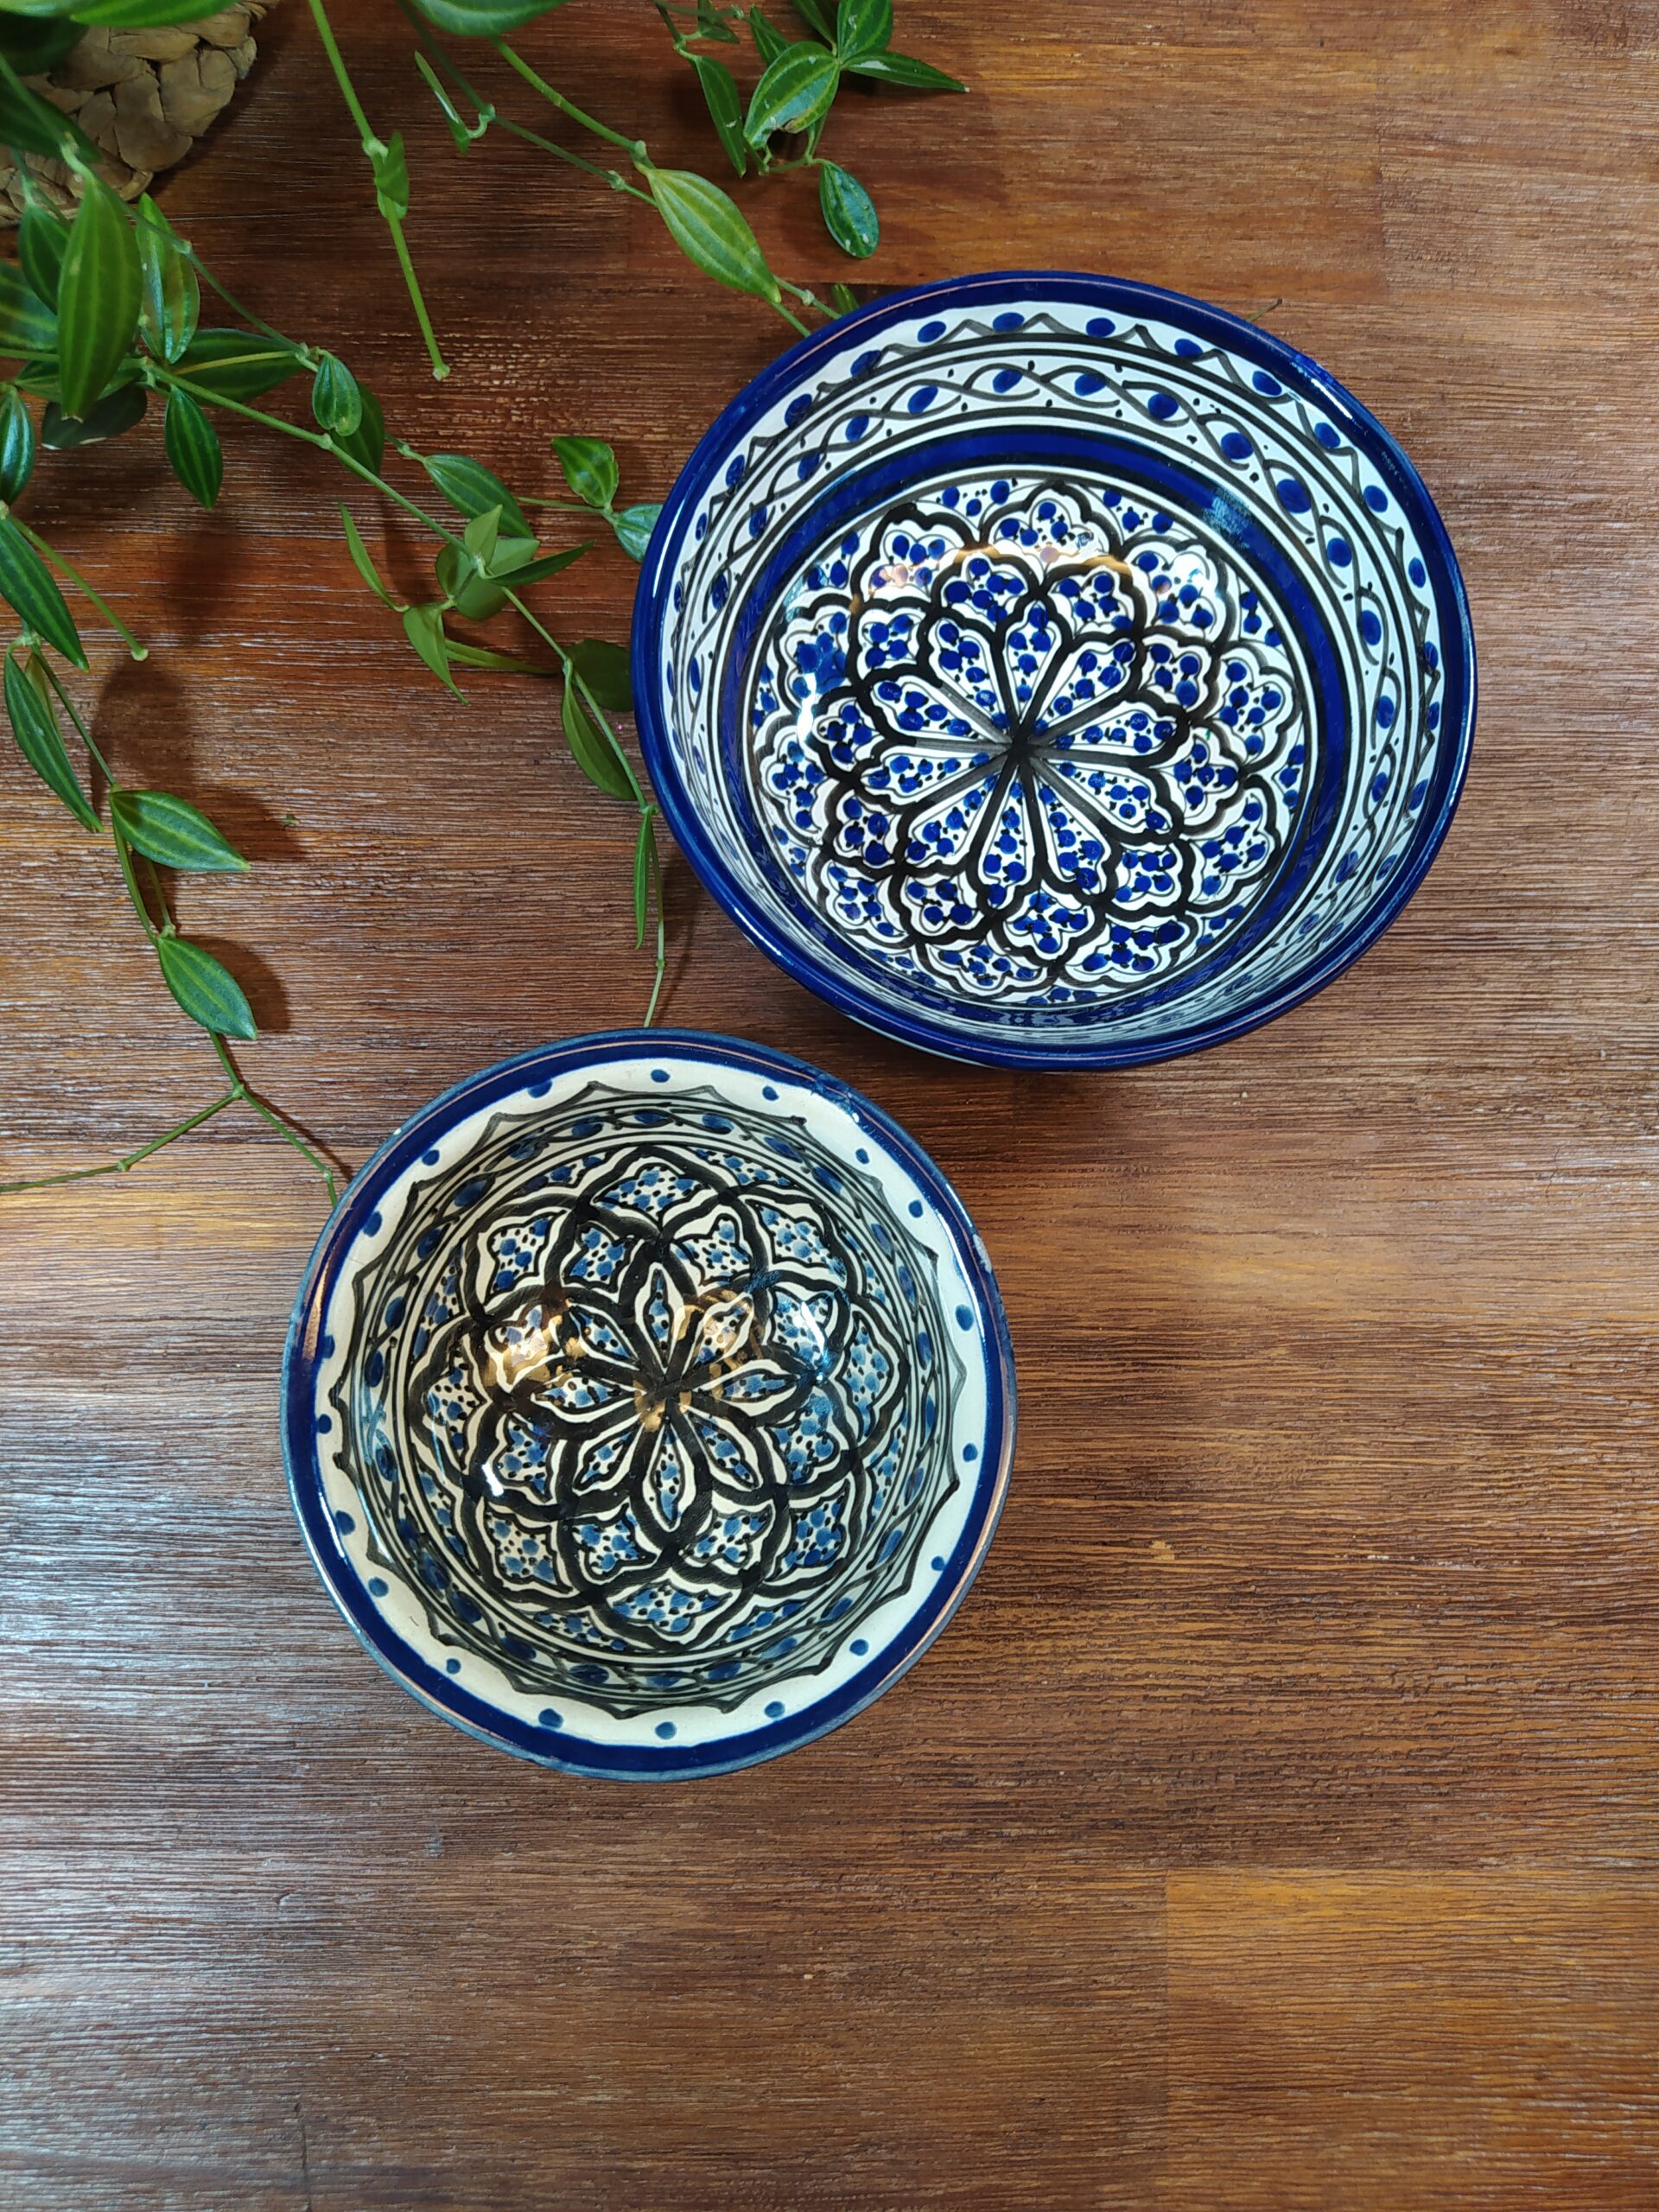 Duo de bols en céramique motifs orientaux bleu et noir.